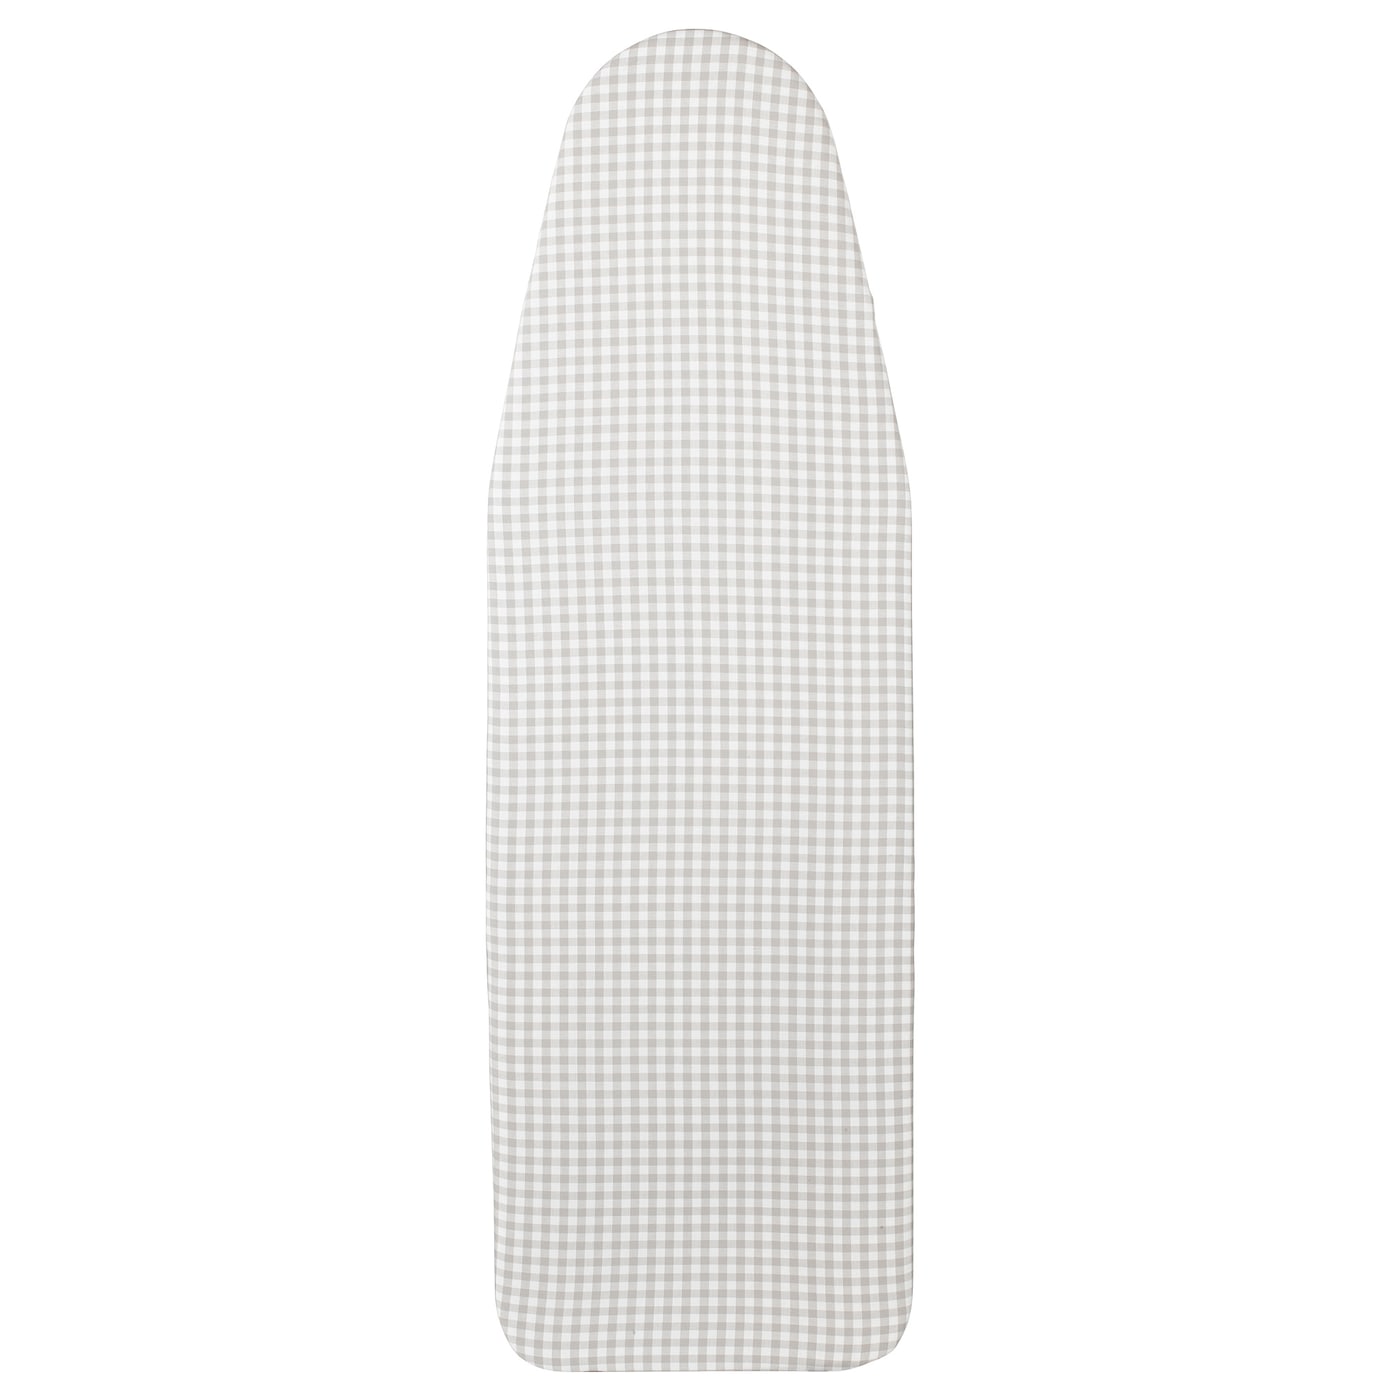 Чехол для гладильной доски - LAGT IKEA/ ЛАГТ ИКЕА,  серый